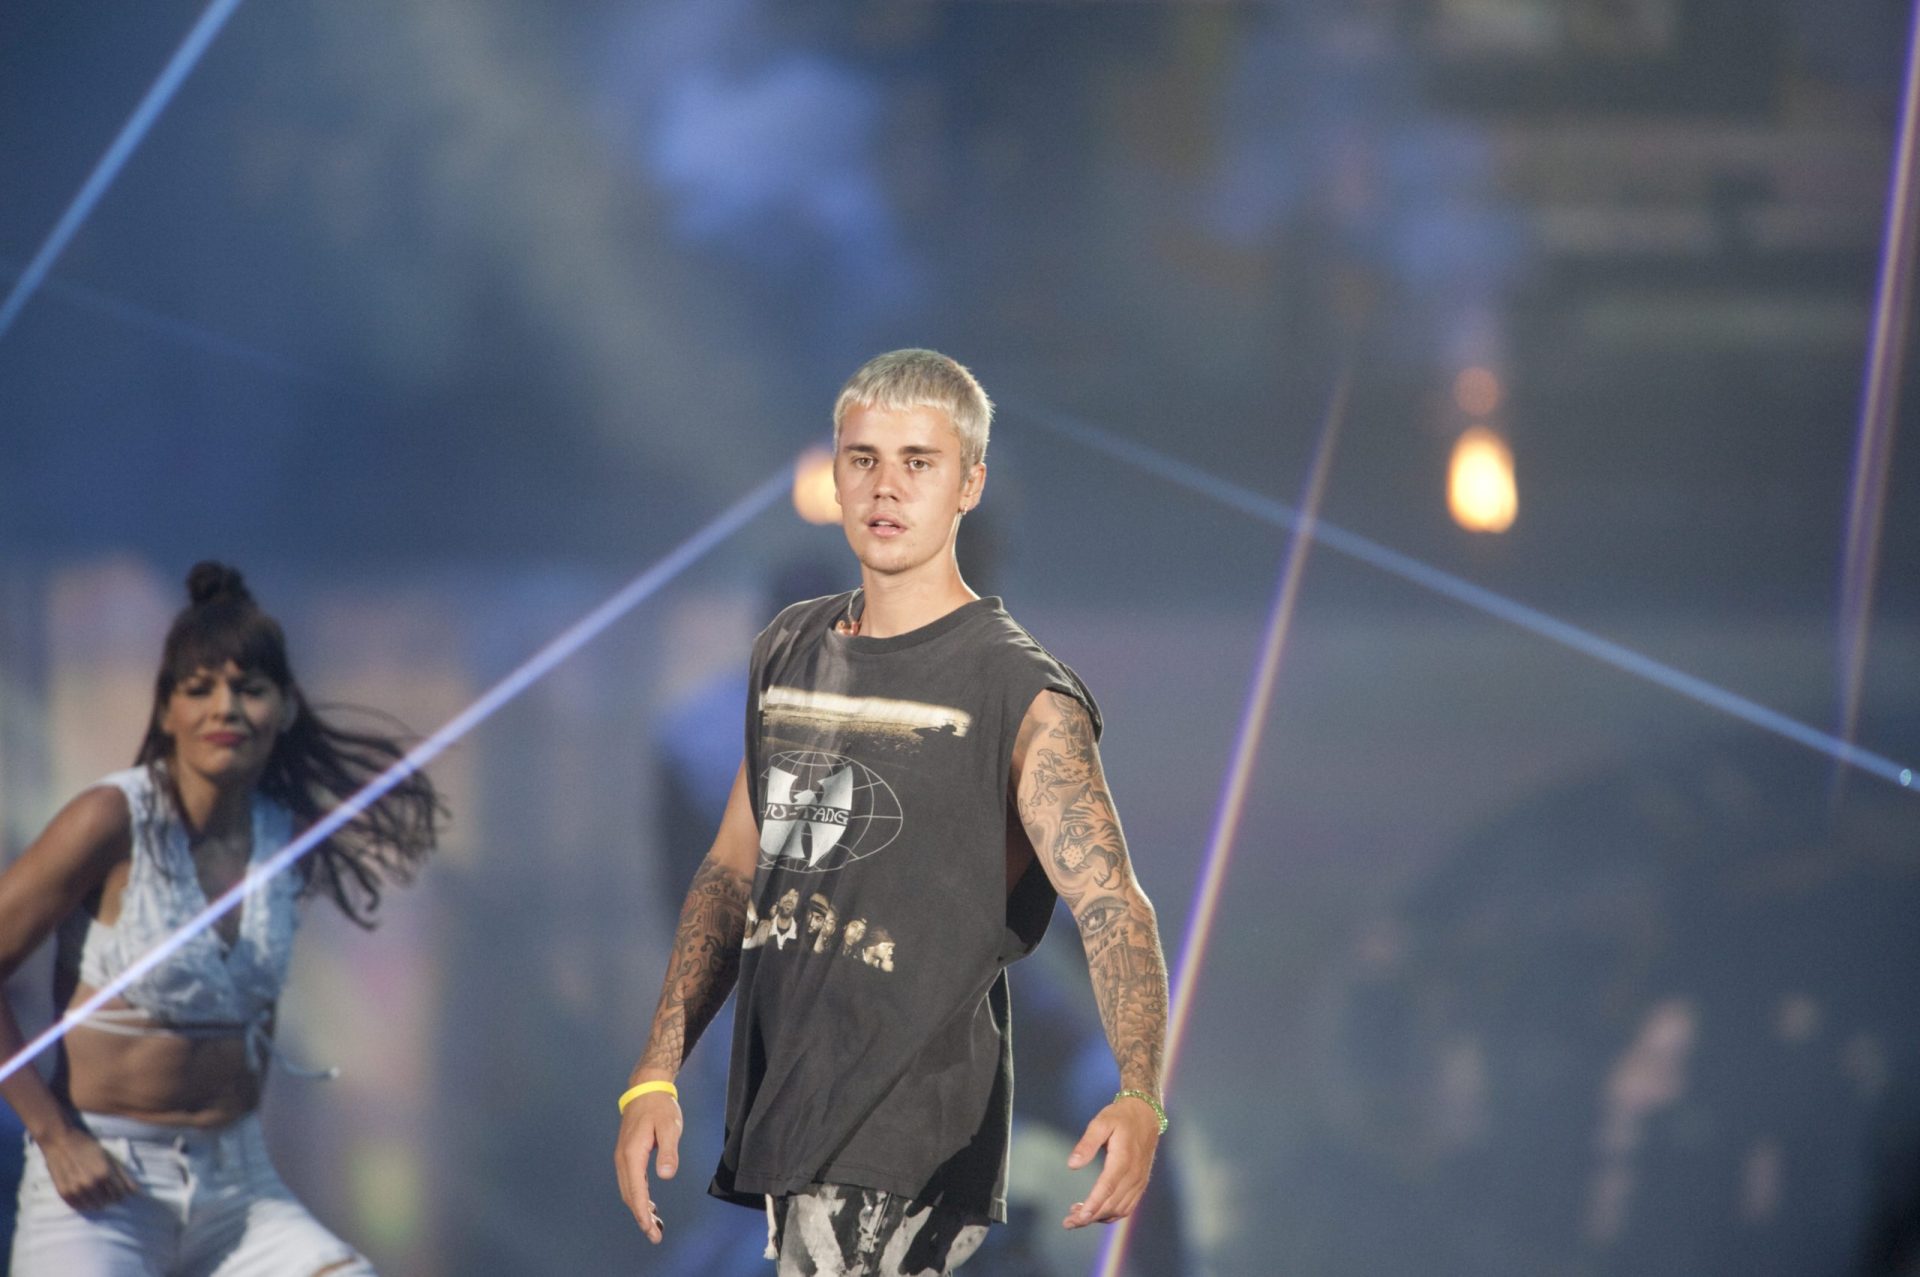 Justin Bieber volta a ofender fãs: “Vocês metem-me nojo”